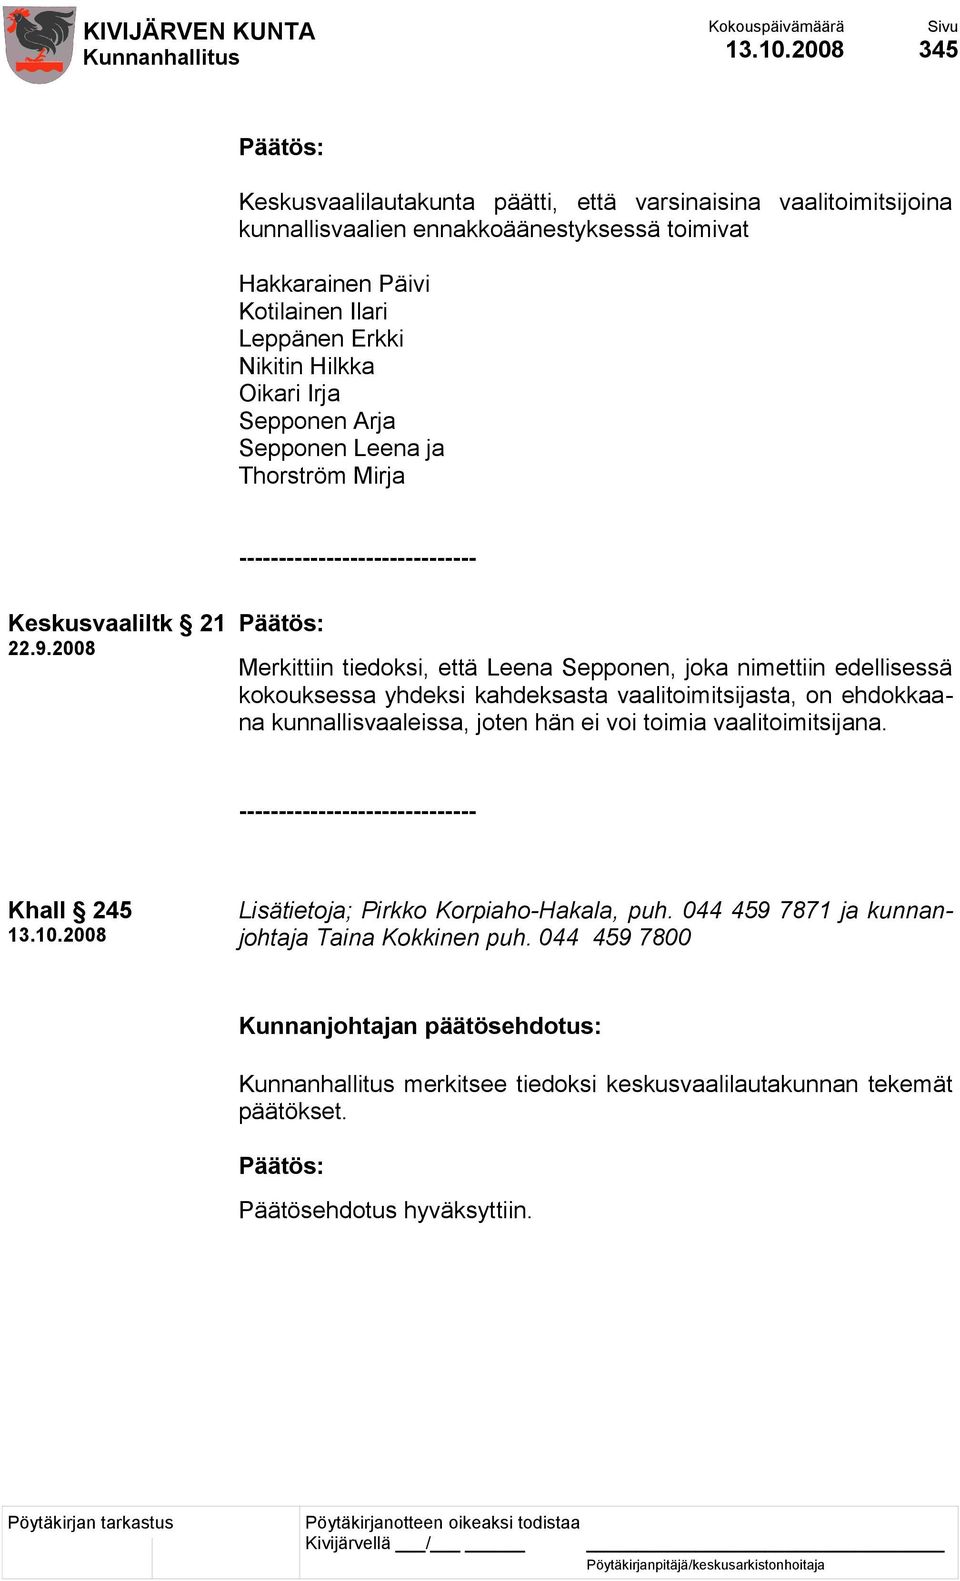 2008 Merkittiin tiedoksi, että Leena Sepponen, joka nimettiin edellisessä kokouksessa yhdeksi kahdeksasta vaalitoimitsijasta, on ehdokkaana kunnallisvaaleissa, joten hän ei voi toimia